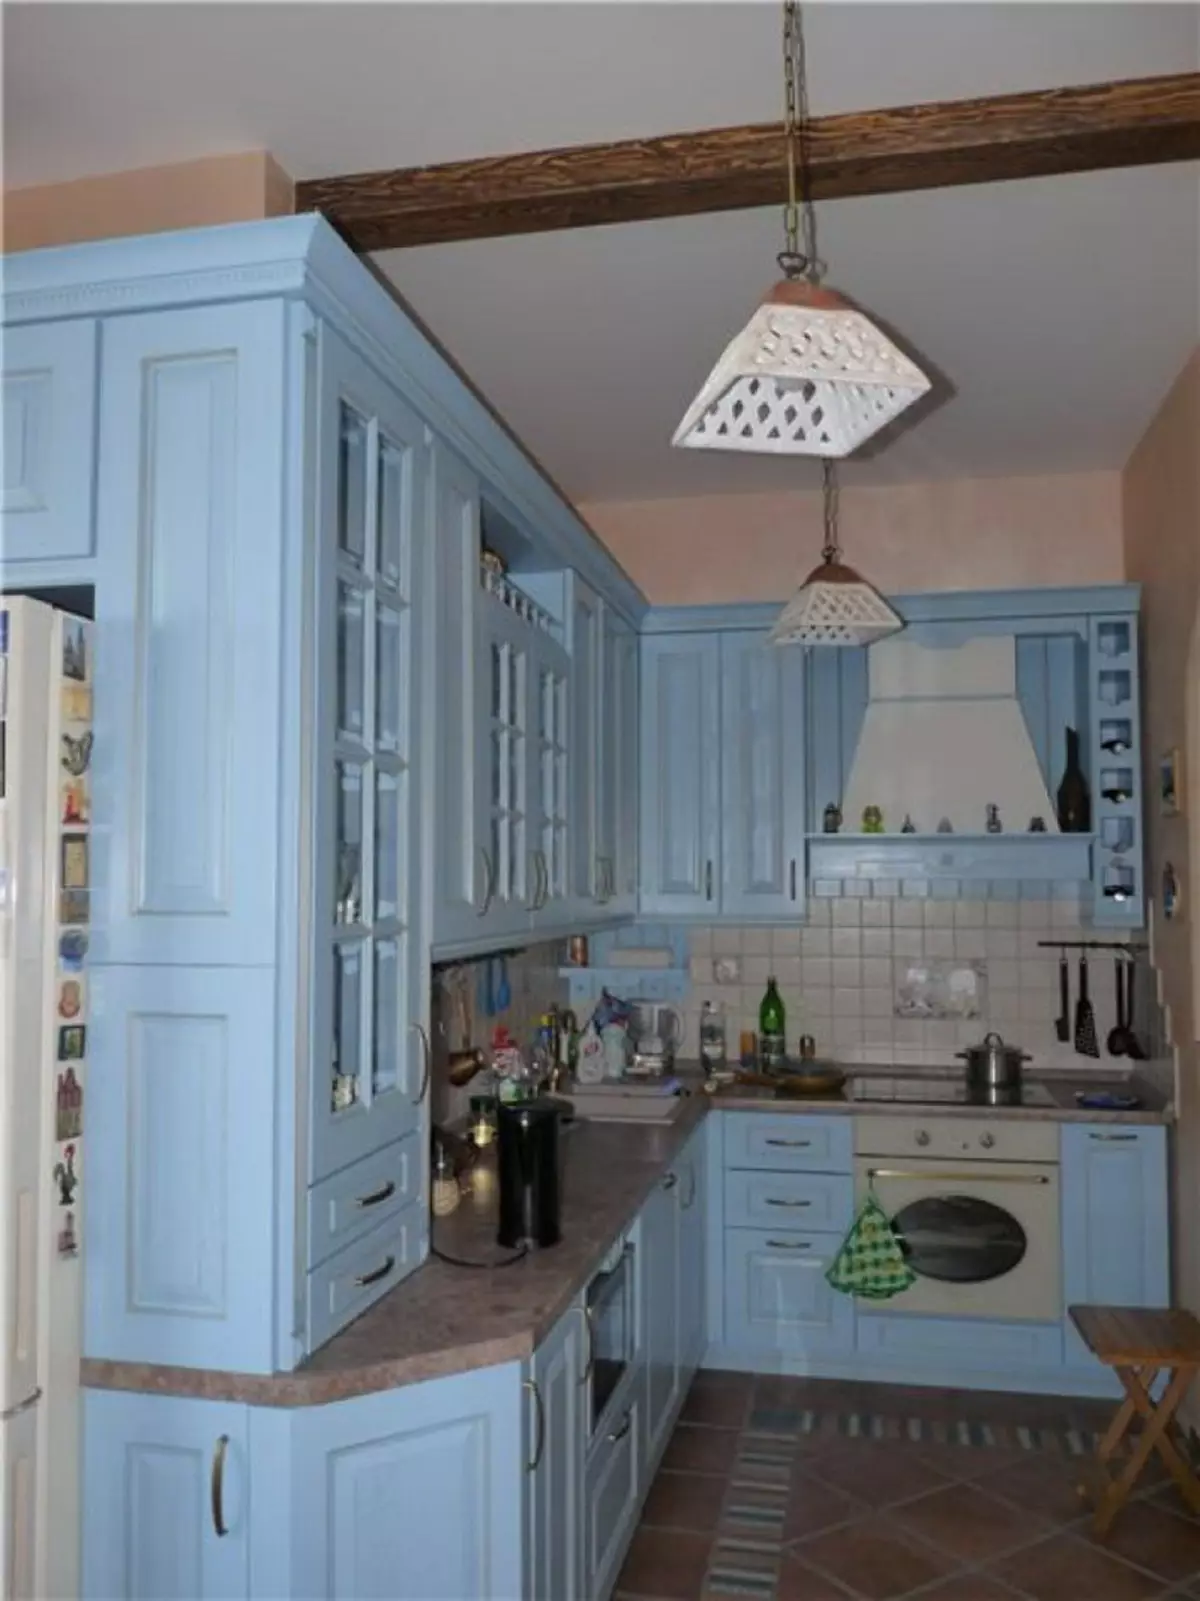 Bucătărie albastră (82 fotografii): Ce culori sunt combinate în interiorul unui set de bucătărie albastră? Design de bucătărie în tonuri albastre ușoare și întunecate 9555_67